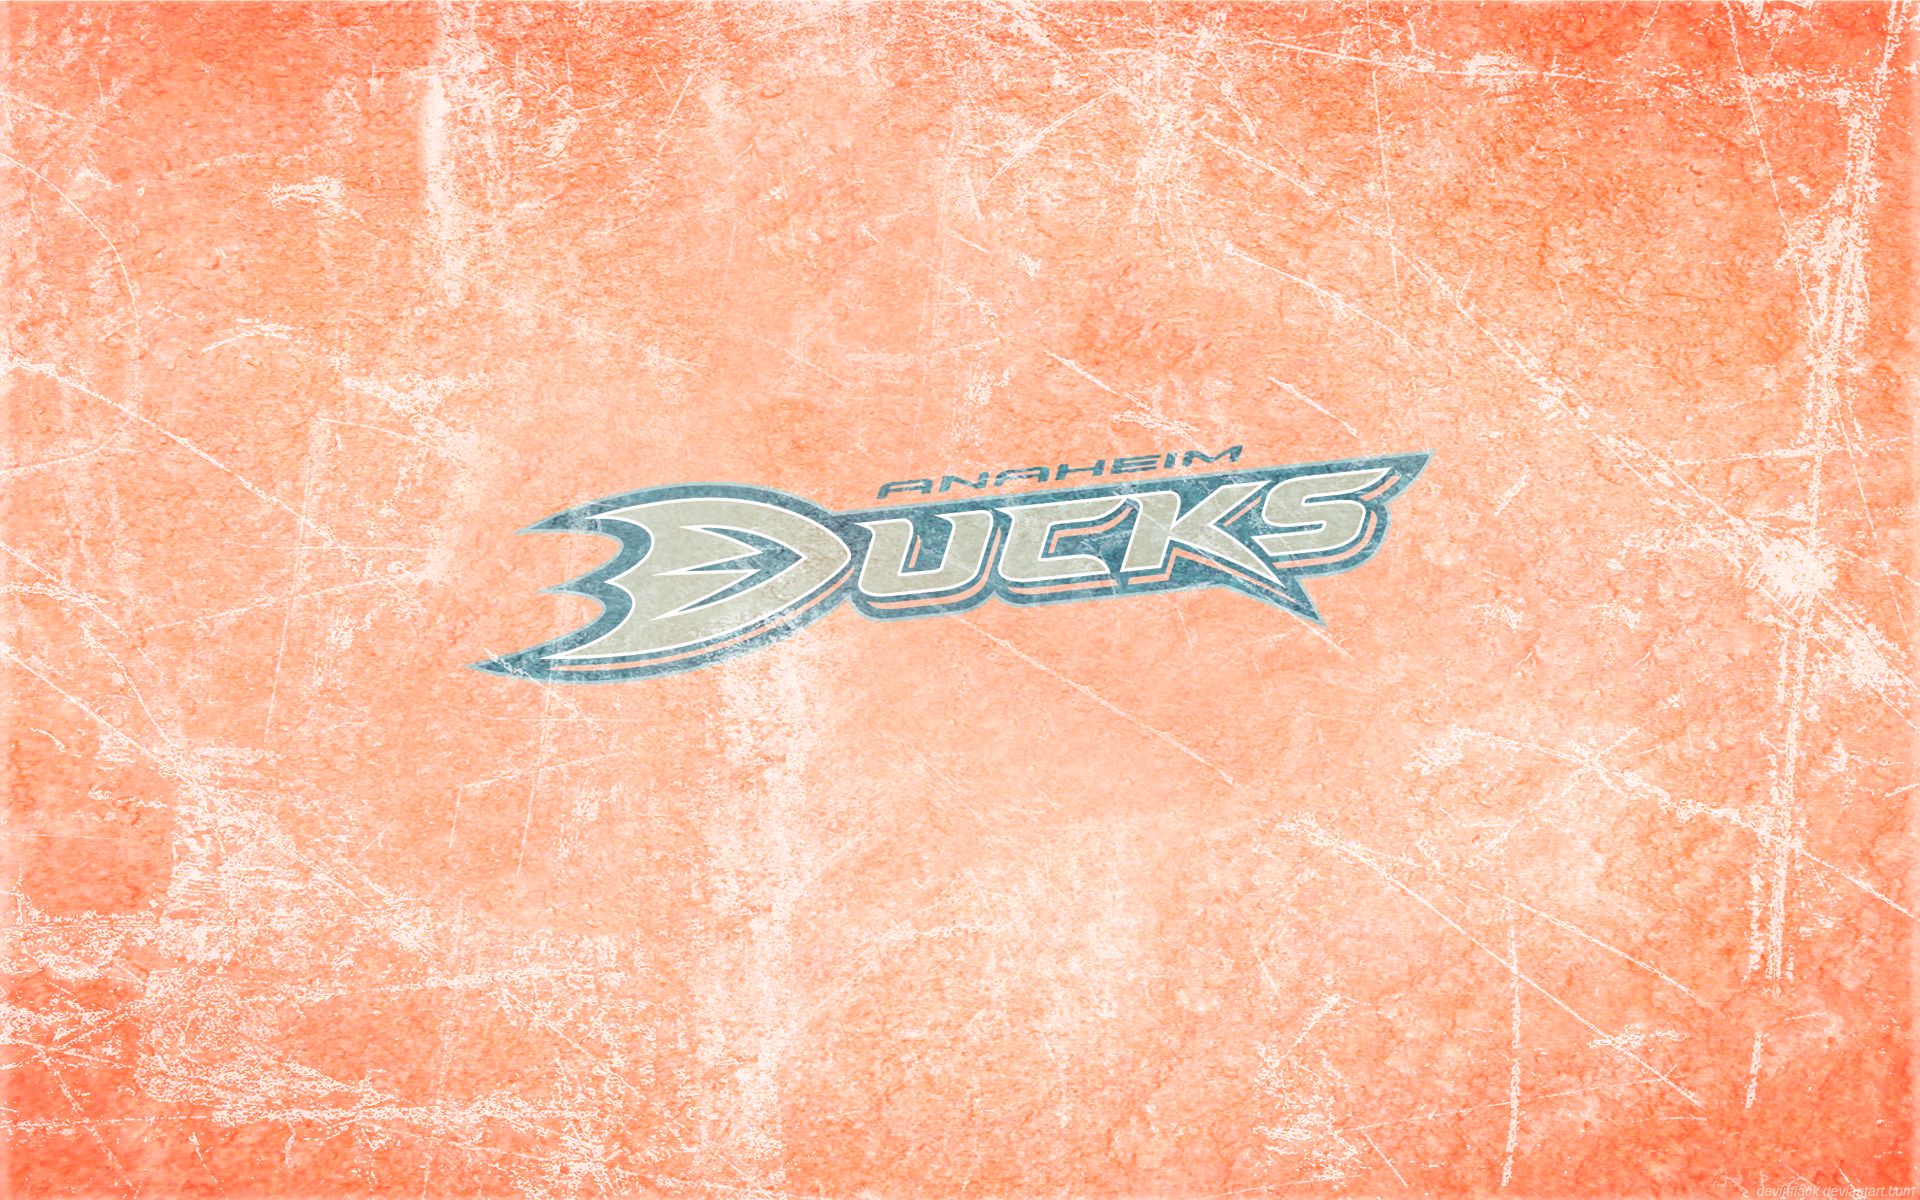 Анахайм Дакс обои. Обои Дакс хоккей лого. Обои на телефон хоккей НХЛ. Anaheim Ducks обои на телефон. Дакс драйв